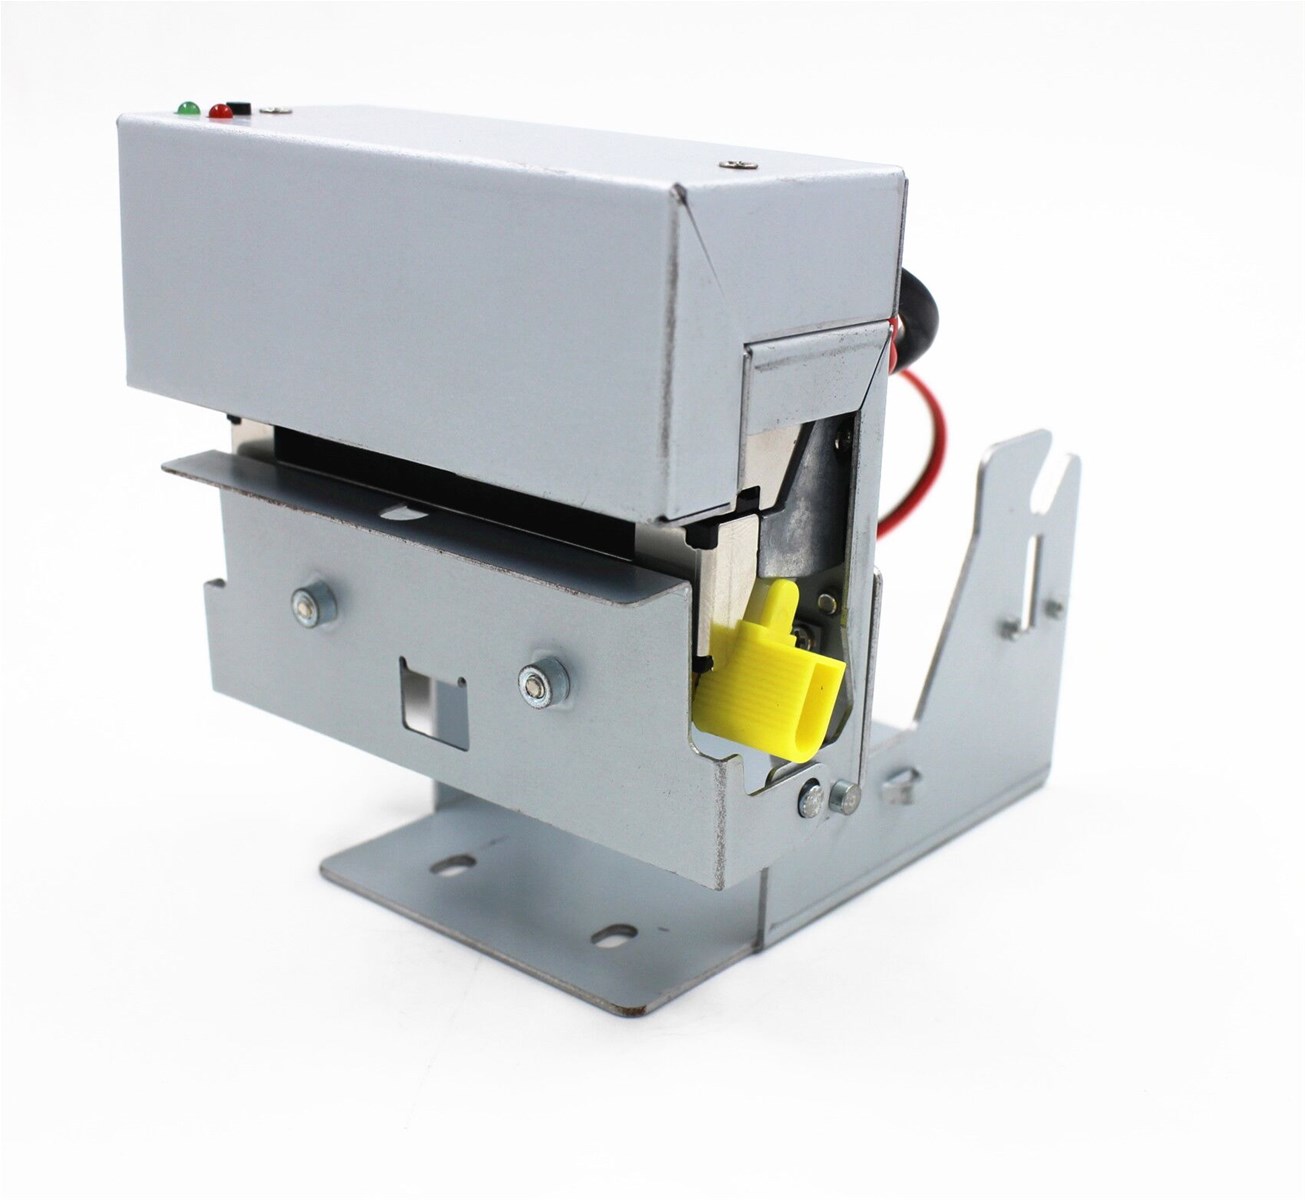 Thermal Kiosk Builtin Printer for Paper Width 58mm